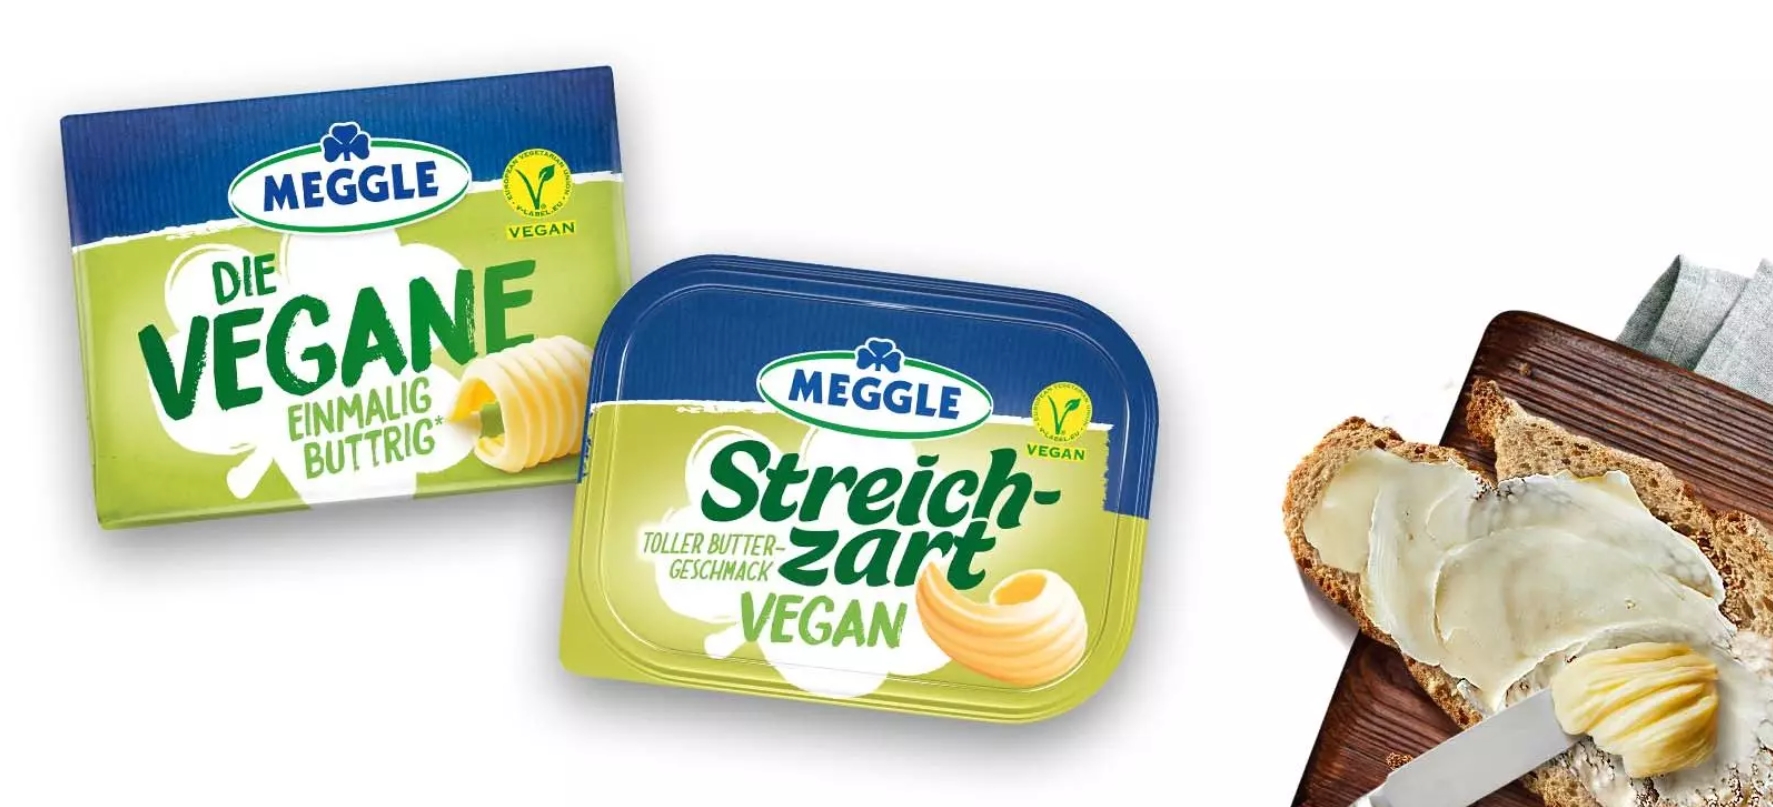 Vegane Produkte von Meggle